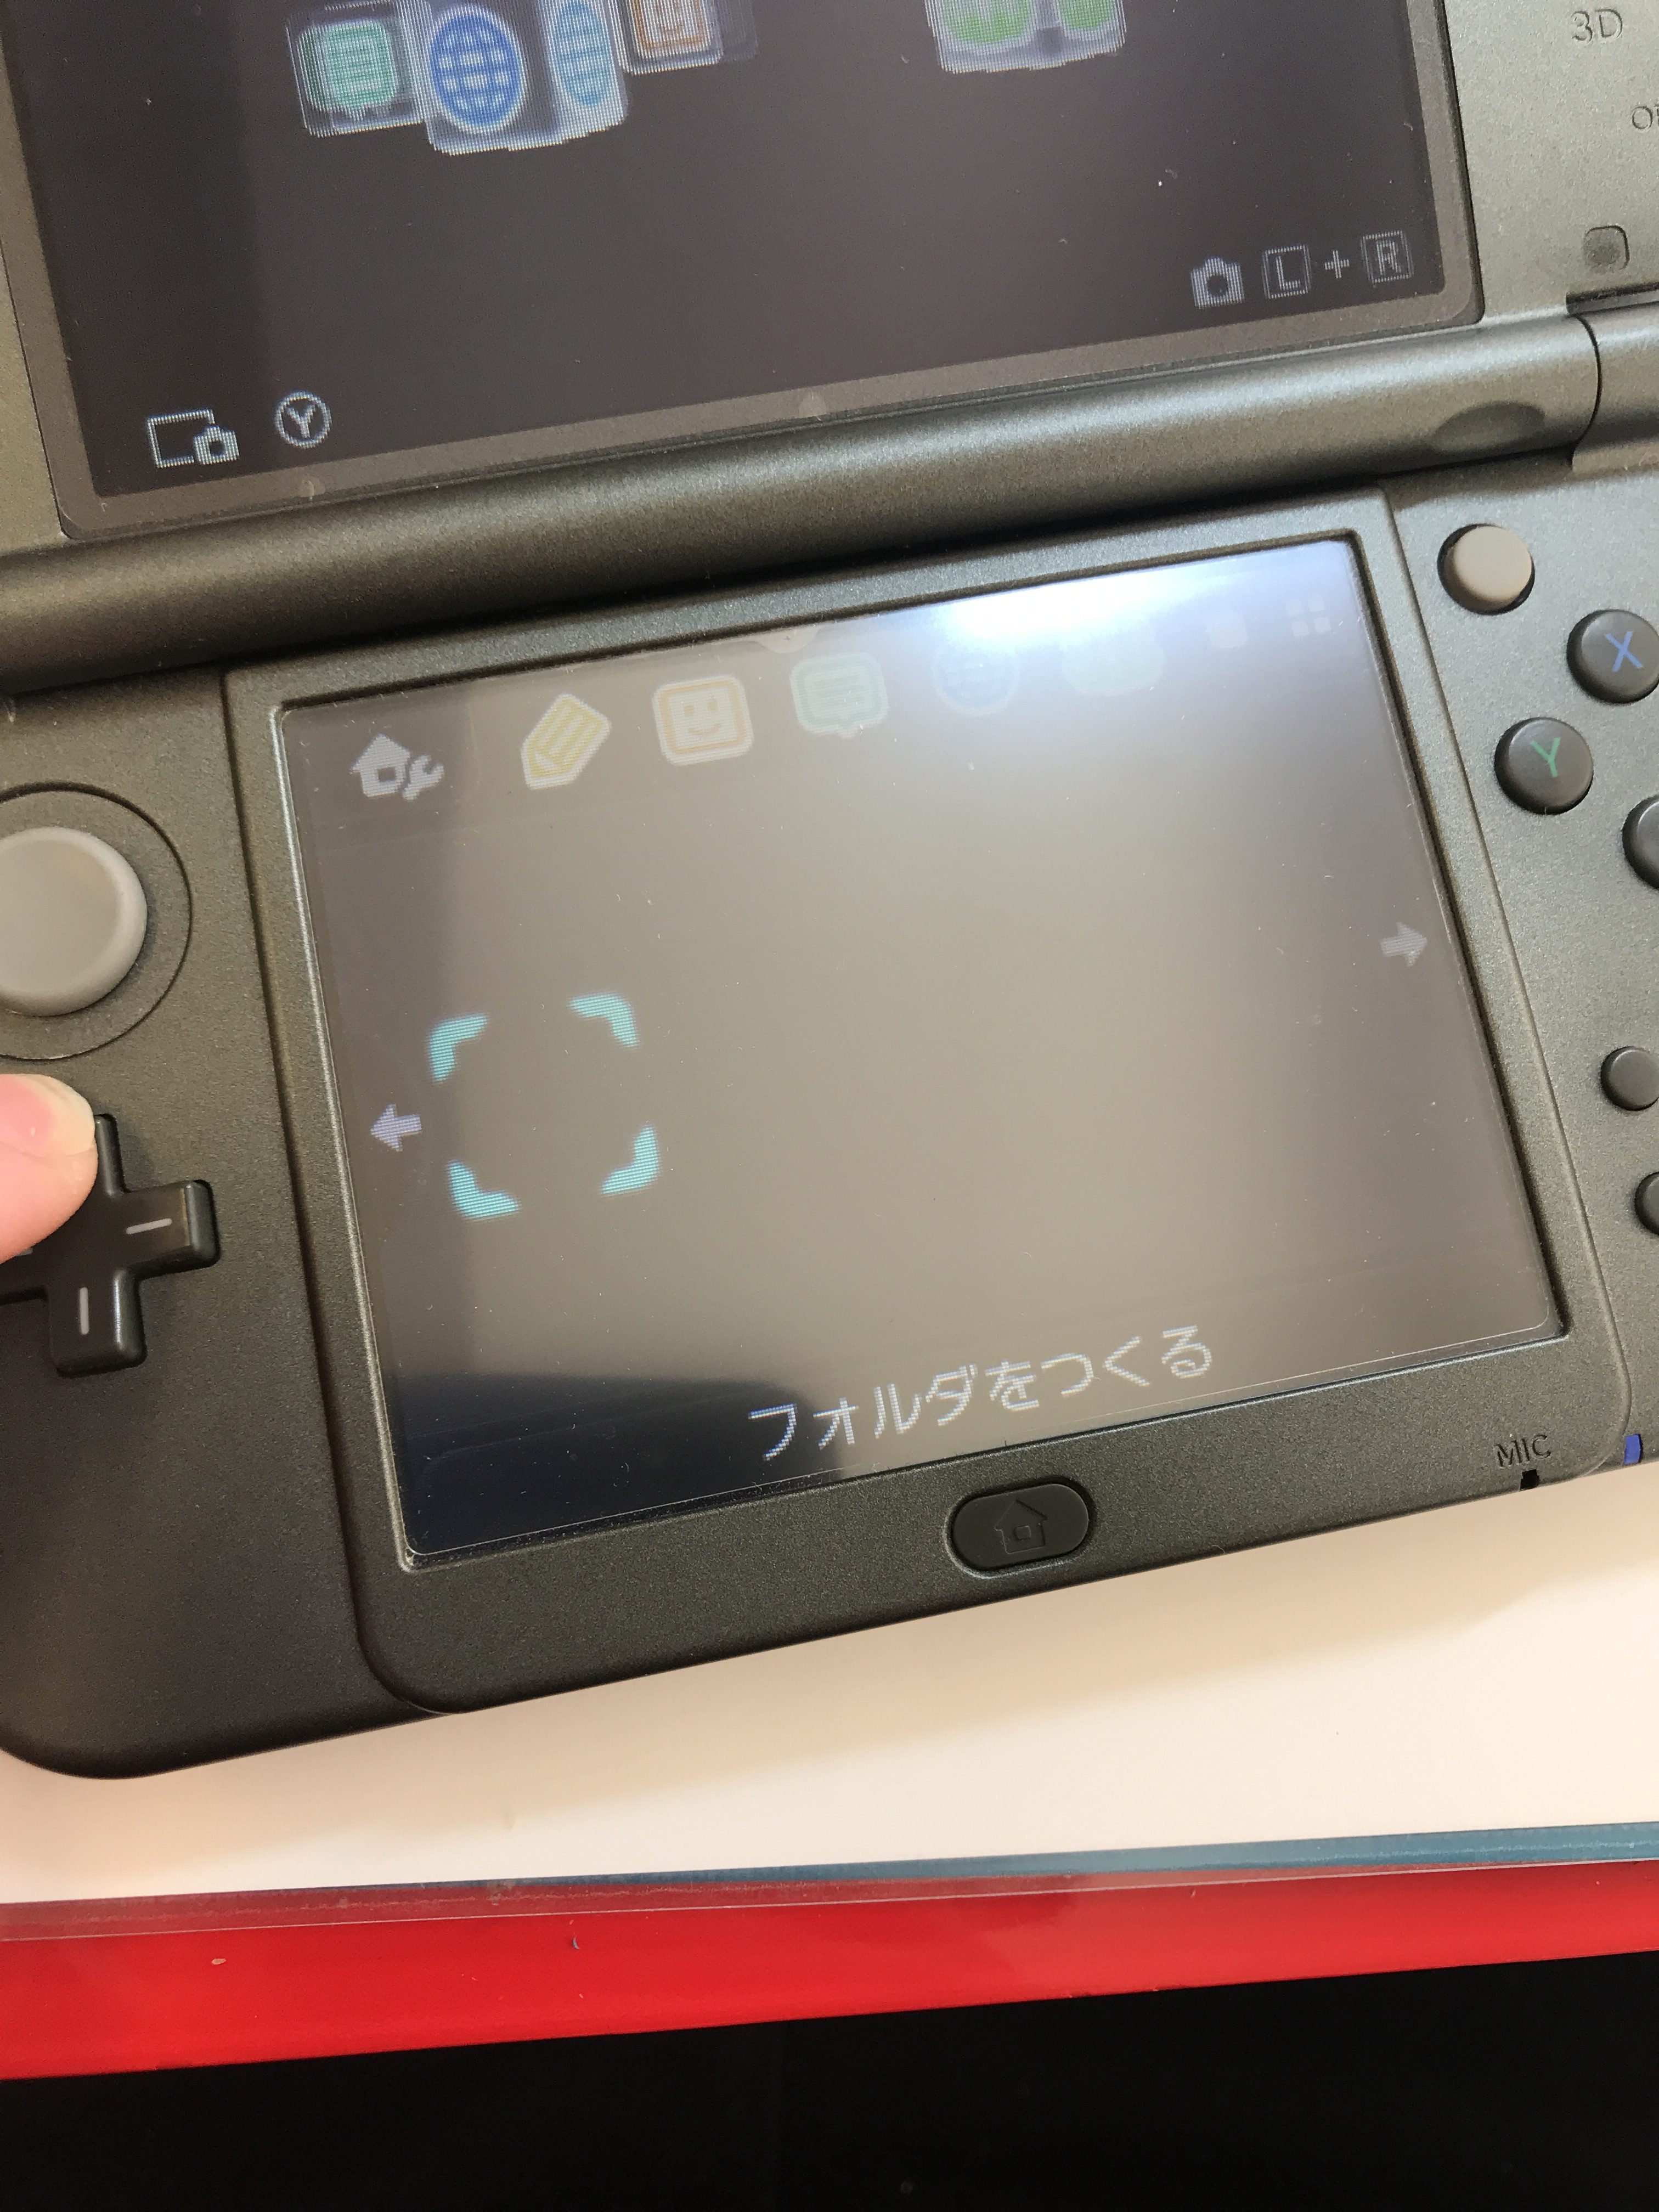 任天堂 New3dsll 十字キーの上が入力されたりされなかったり パーツの交換修理 Nintendo3ds Switch Psp 修理のゲームホスピタル Nintendo3ds ニンテンドーds Psp Switch 修理